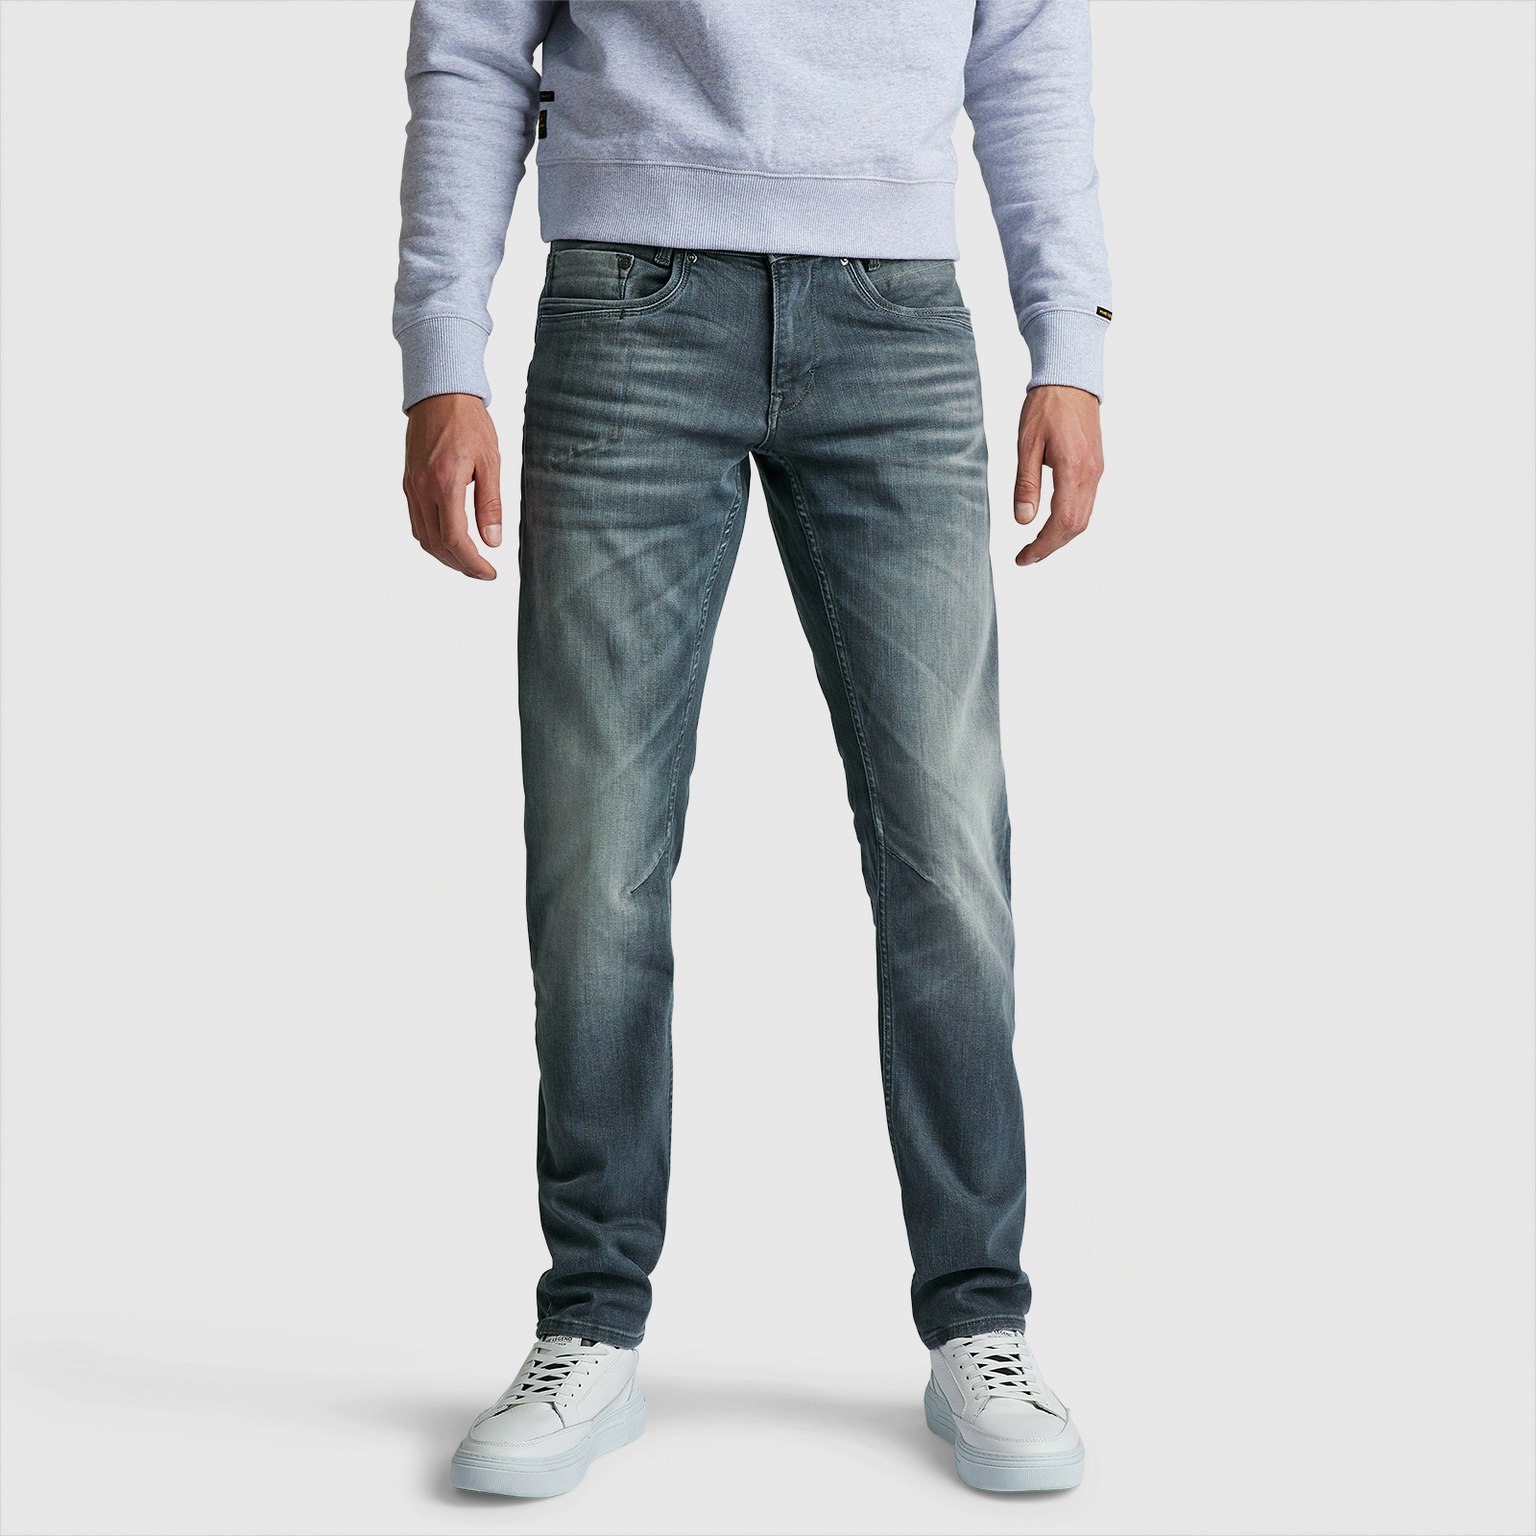 PME Legend Skymaster Jeans Regular Slim Fit grey wash